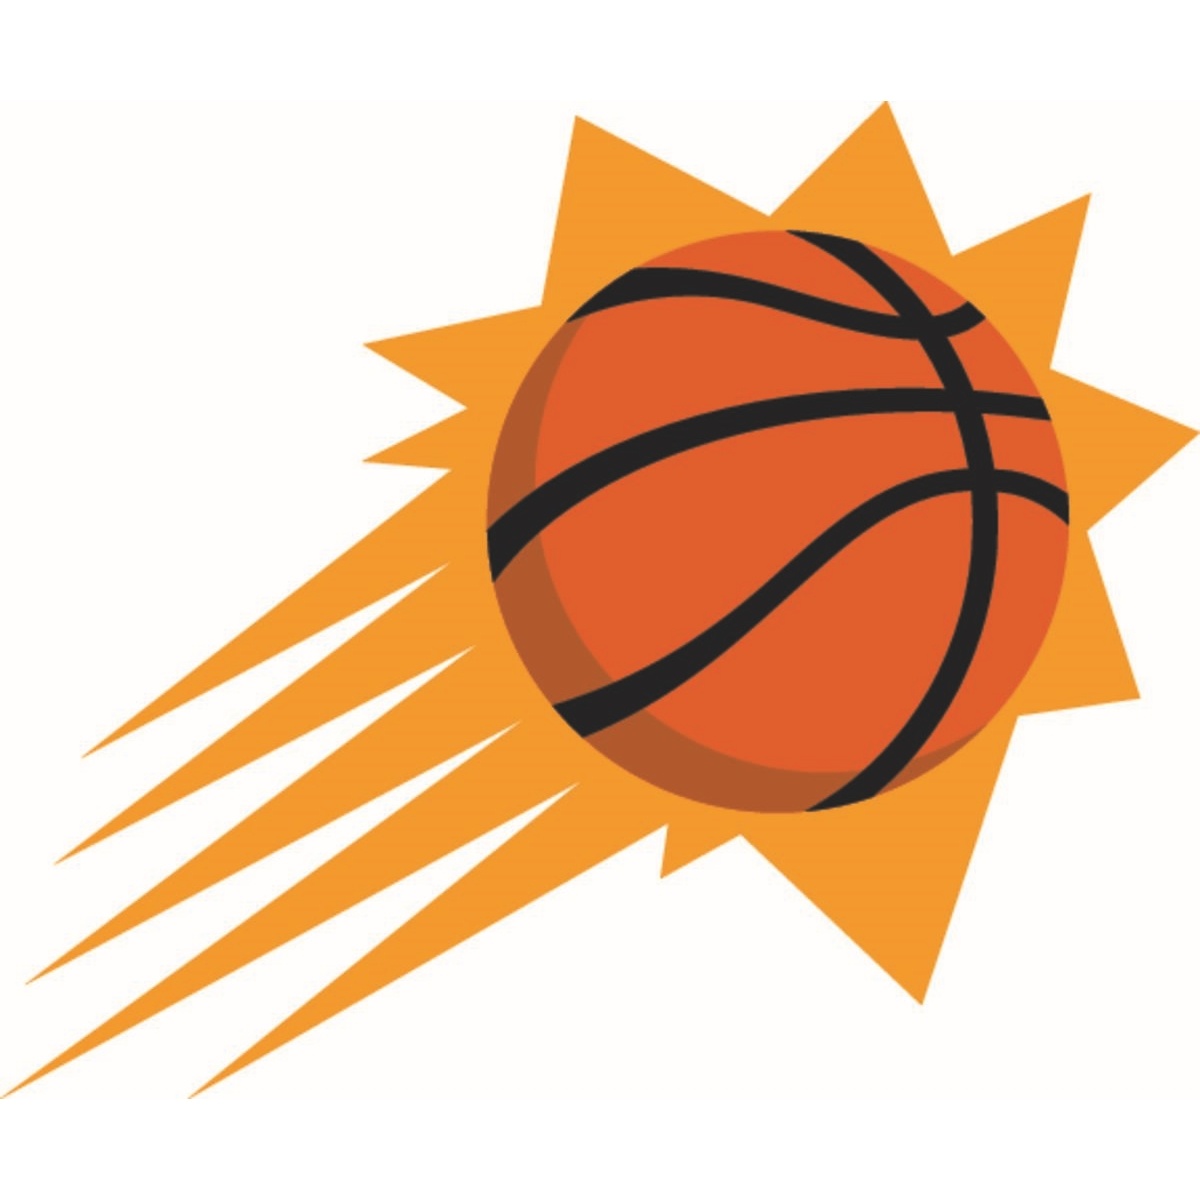 Ballons de basket NBA Team Alliance Phoenix Suns